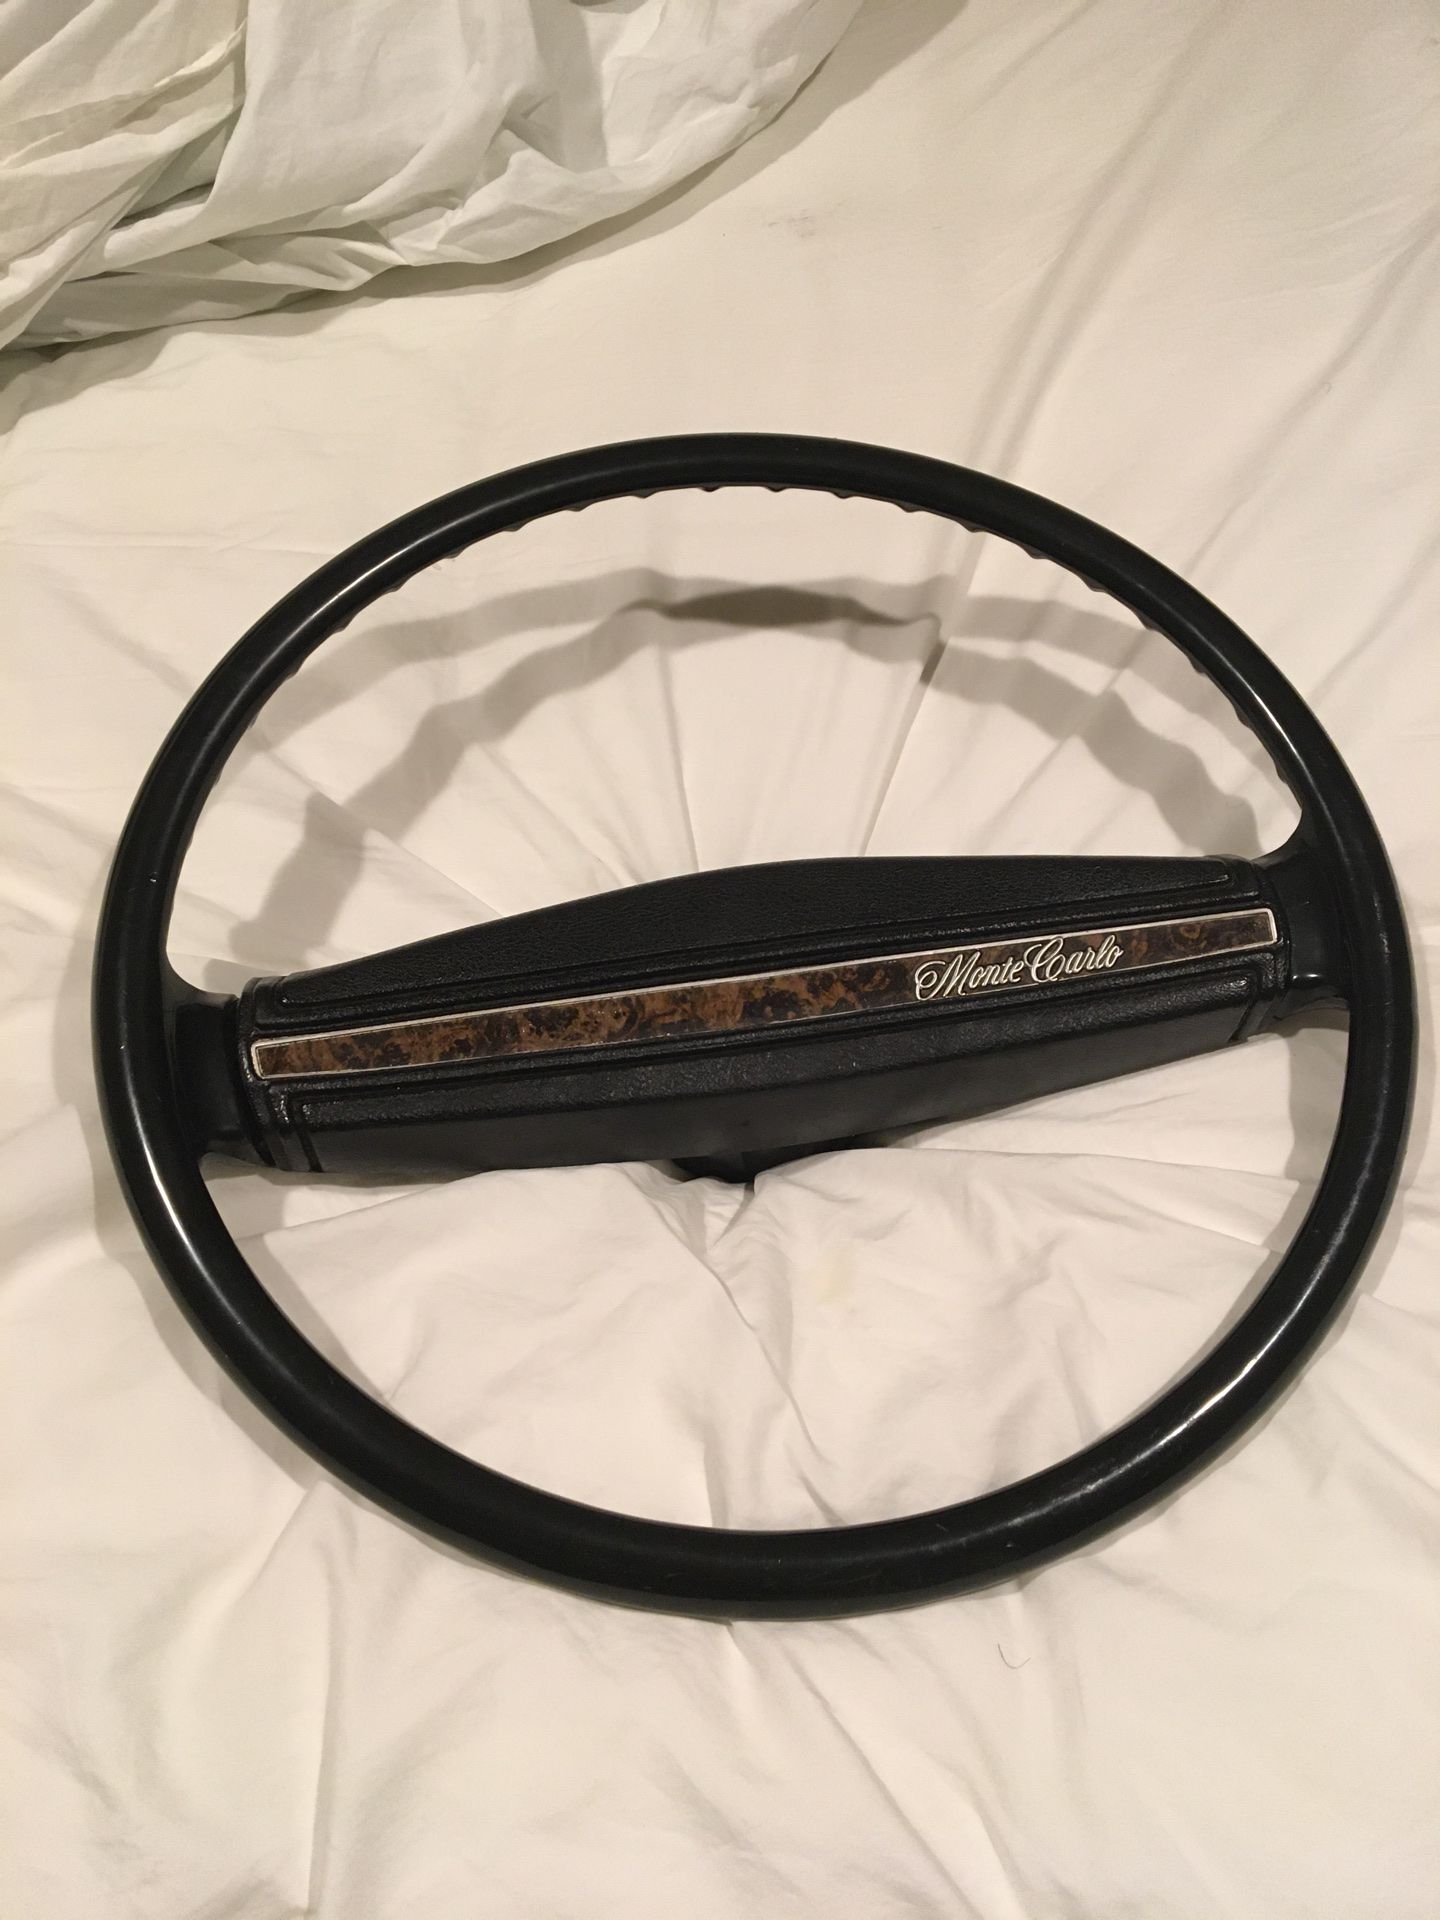 71-72 Monte Carlo steering wheel